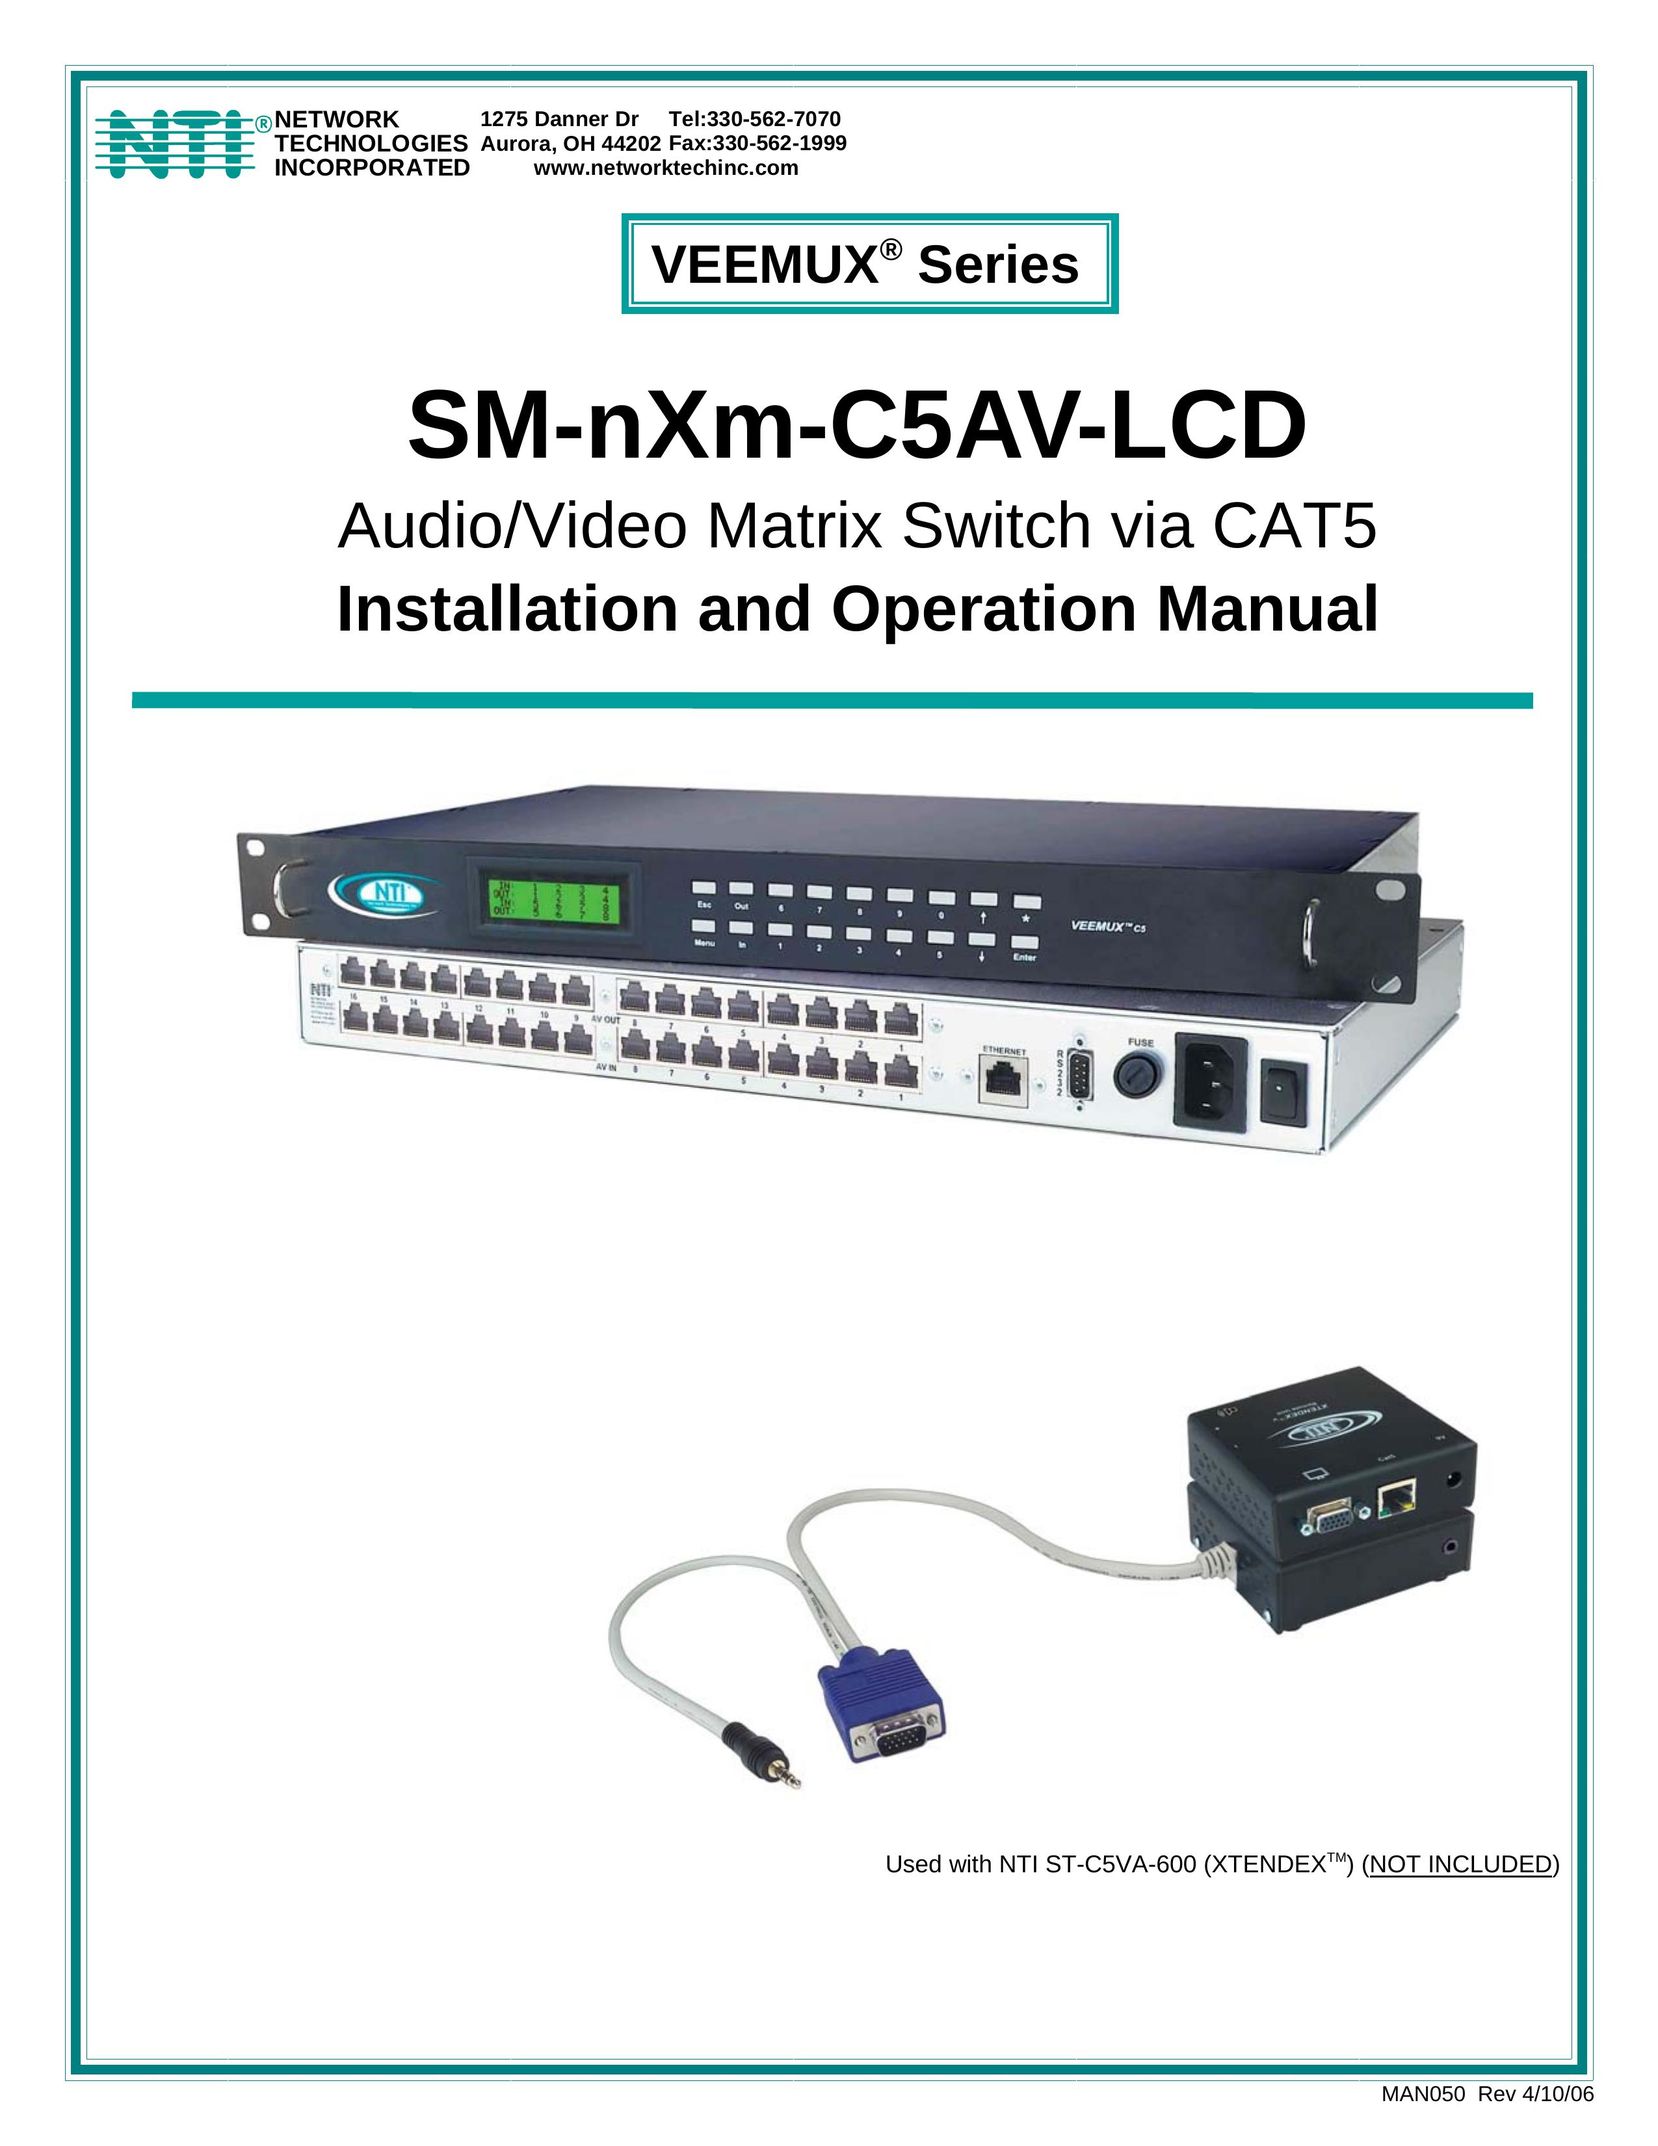 Network Technologies SM-nXm-C5AV-LCD Switch User Manual